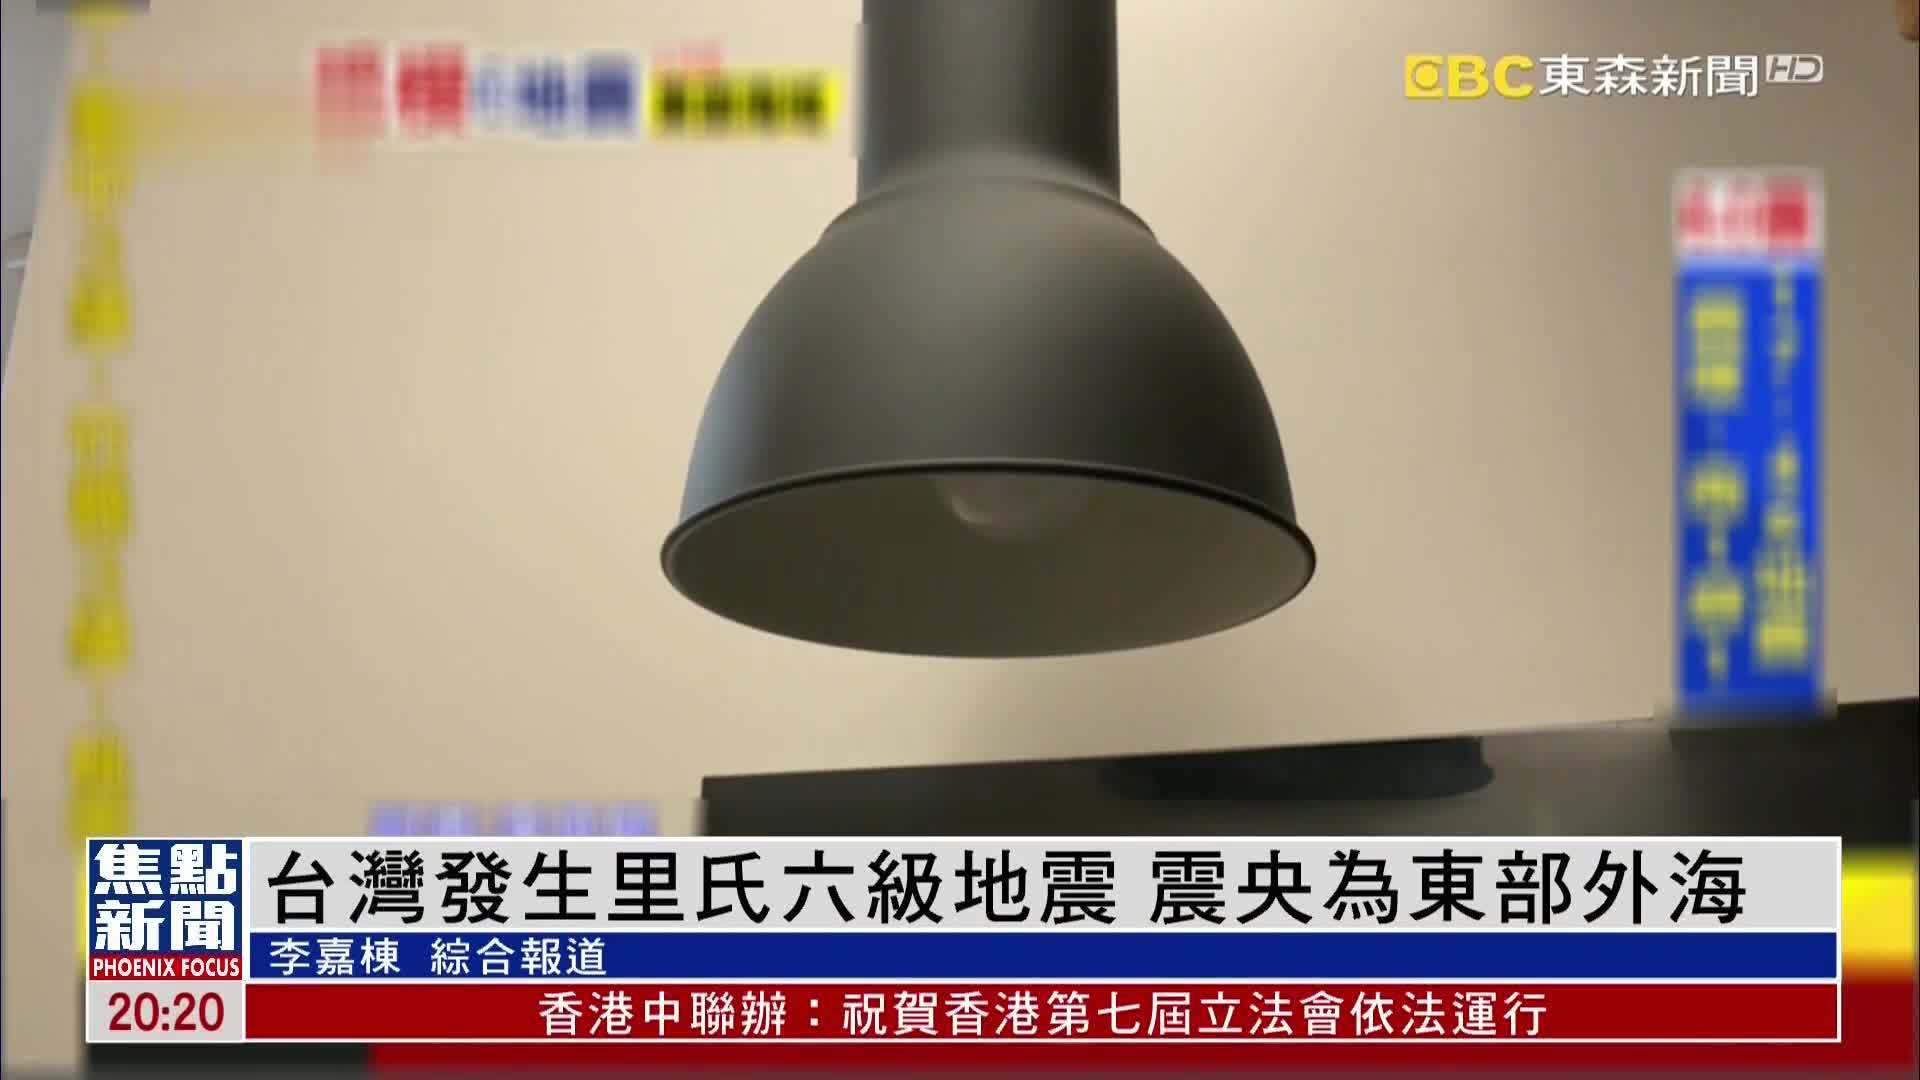 台湾花莲县发生6.9级地震 专家称释放能量相当于8颗原子弹 - 警告! - cnBeta.COM